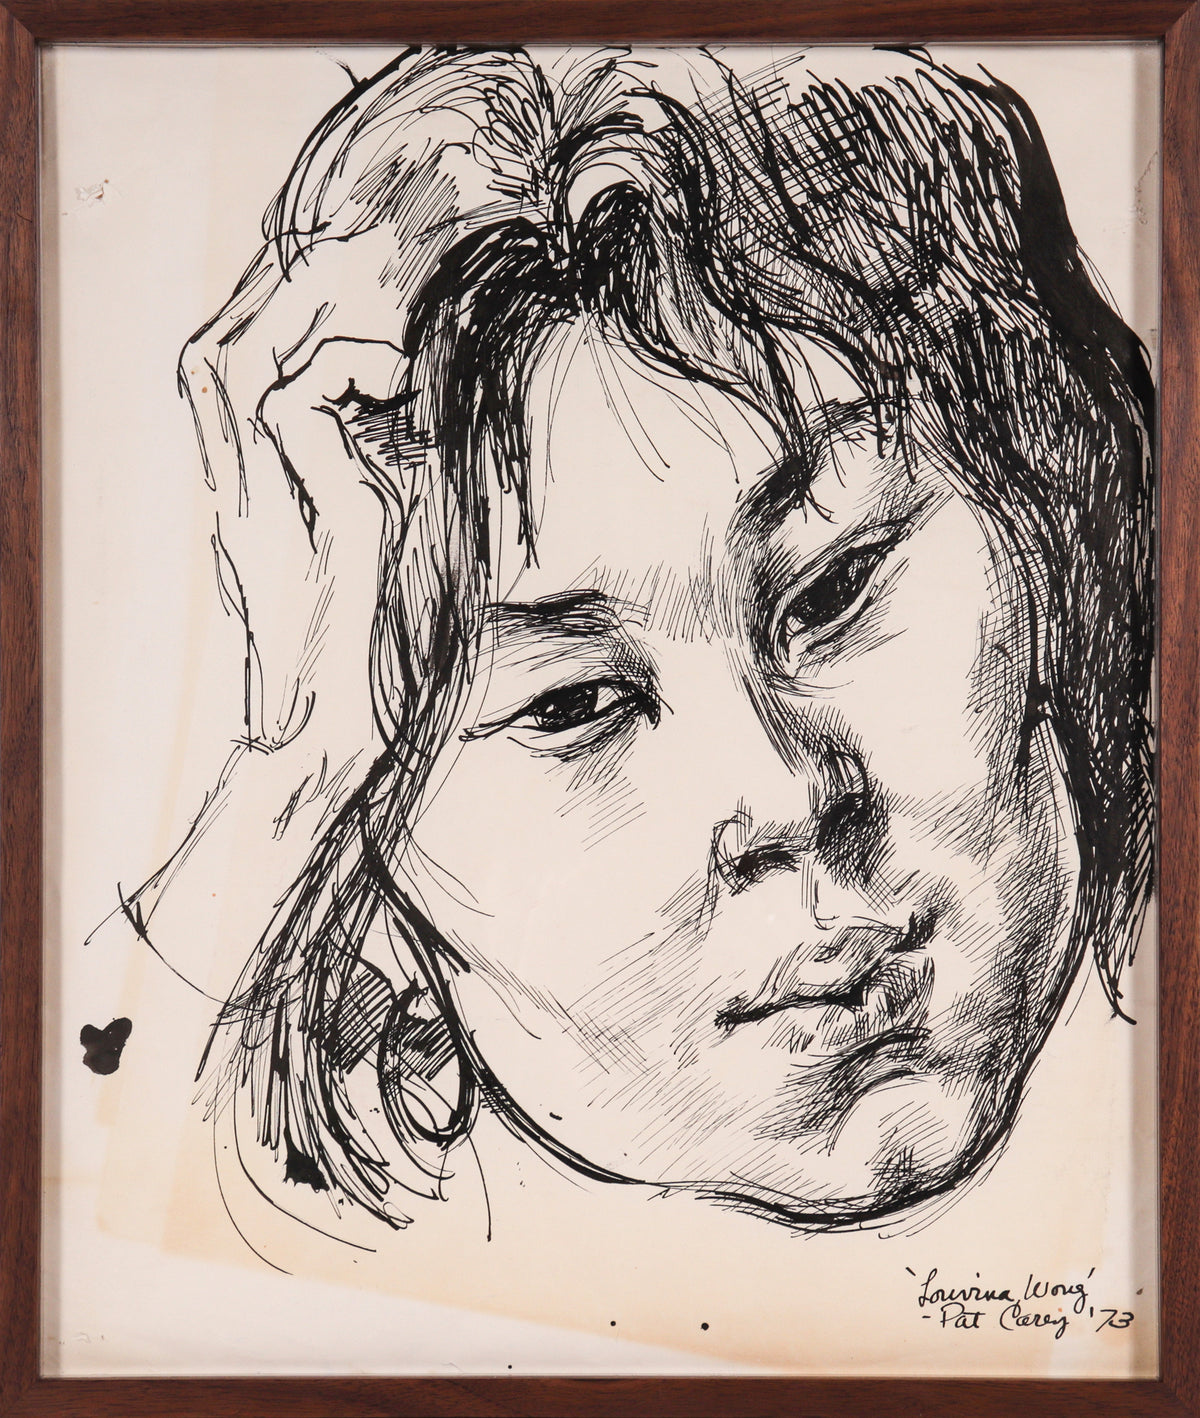 &lt;i&gt;Louvina Wong&lt;/i&gt; &lt;br&gt;1973 Ink &lt;br&gt;&lt;br&gt;#C0489